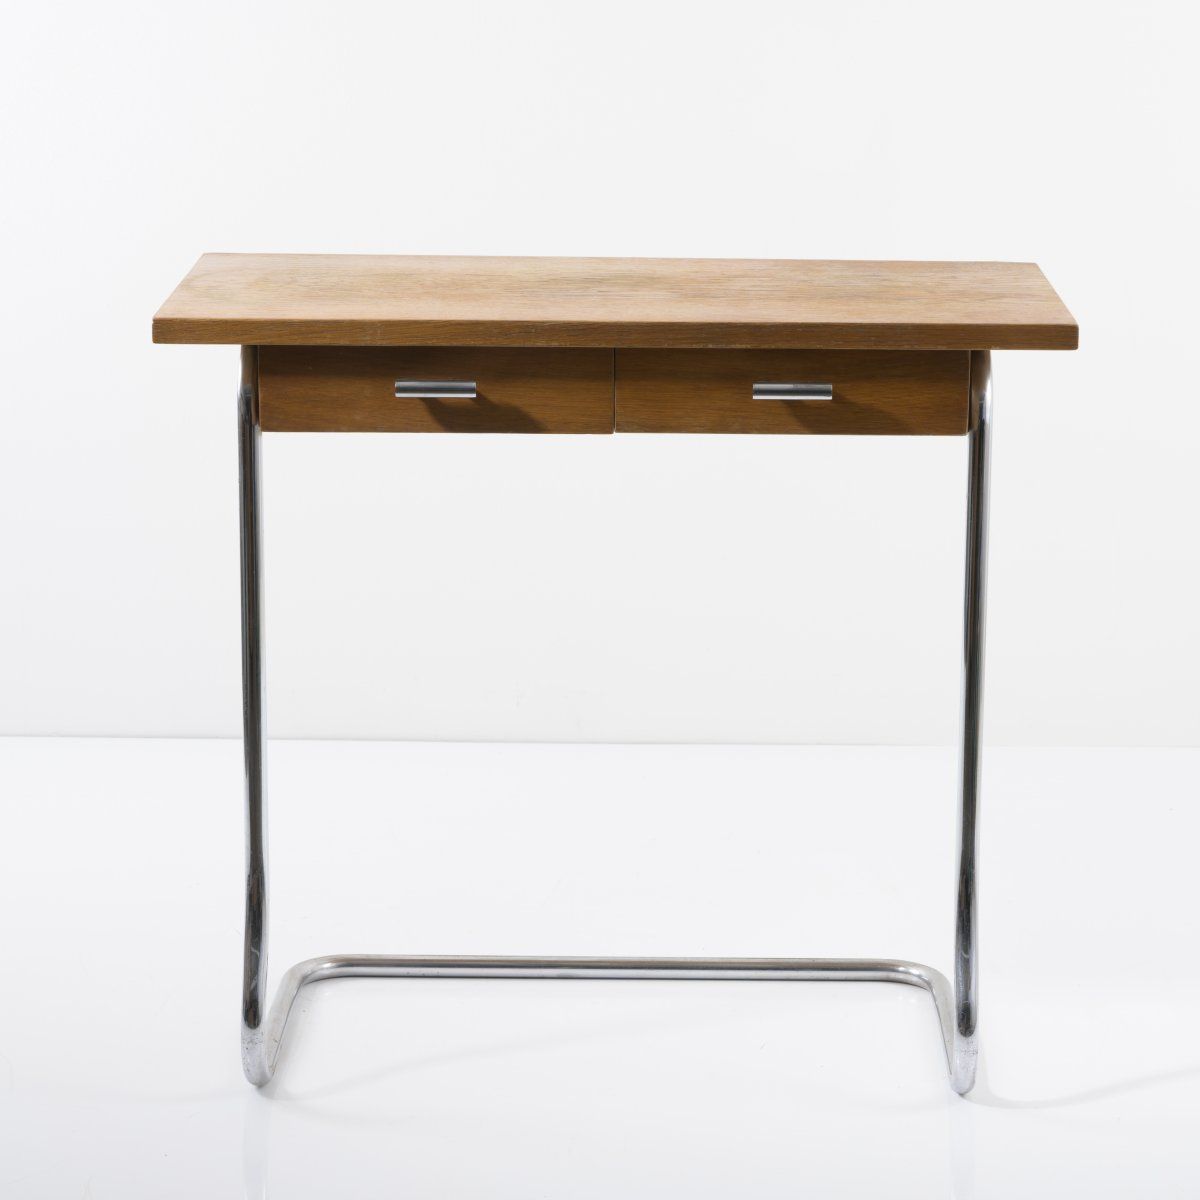 Null 德国，控制台桌，1930年代，高72.5 x 80 x 40厘米；管径2.0厘米。管状钢，镀铬，木箱结构；细木工板与橡木饰面。